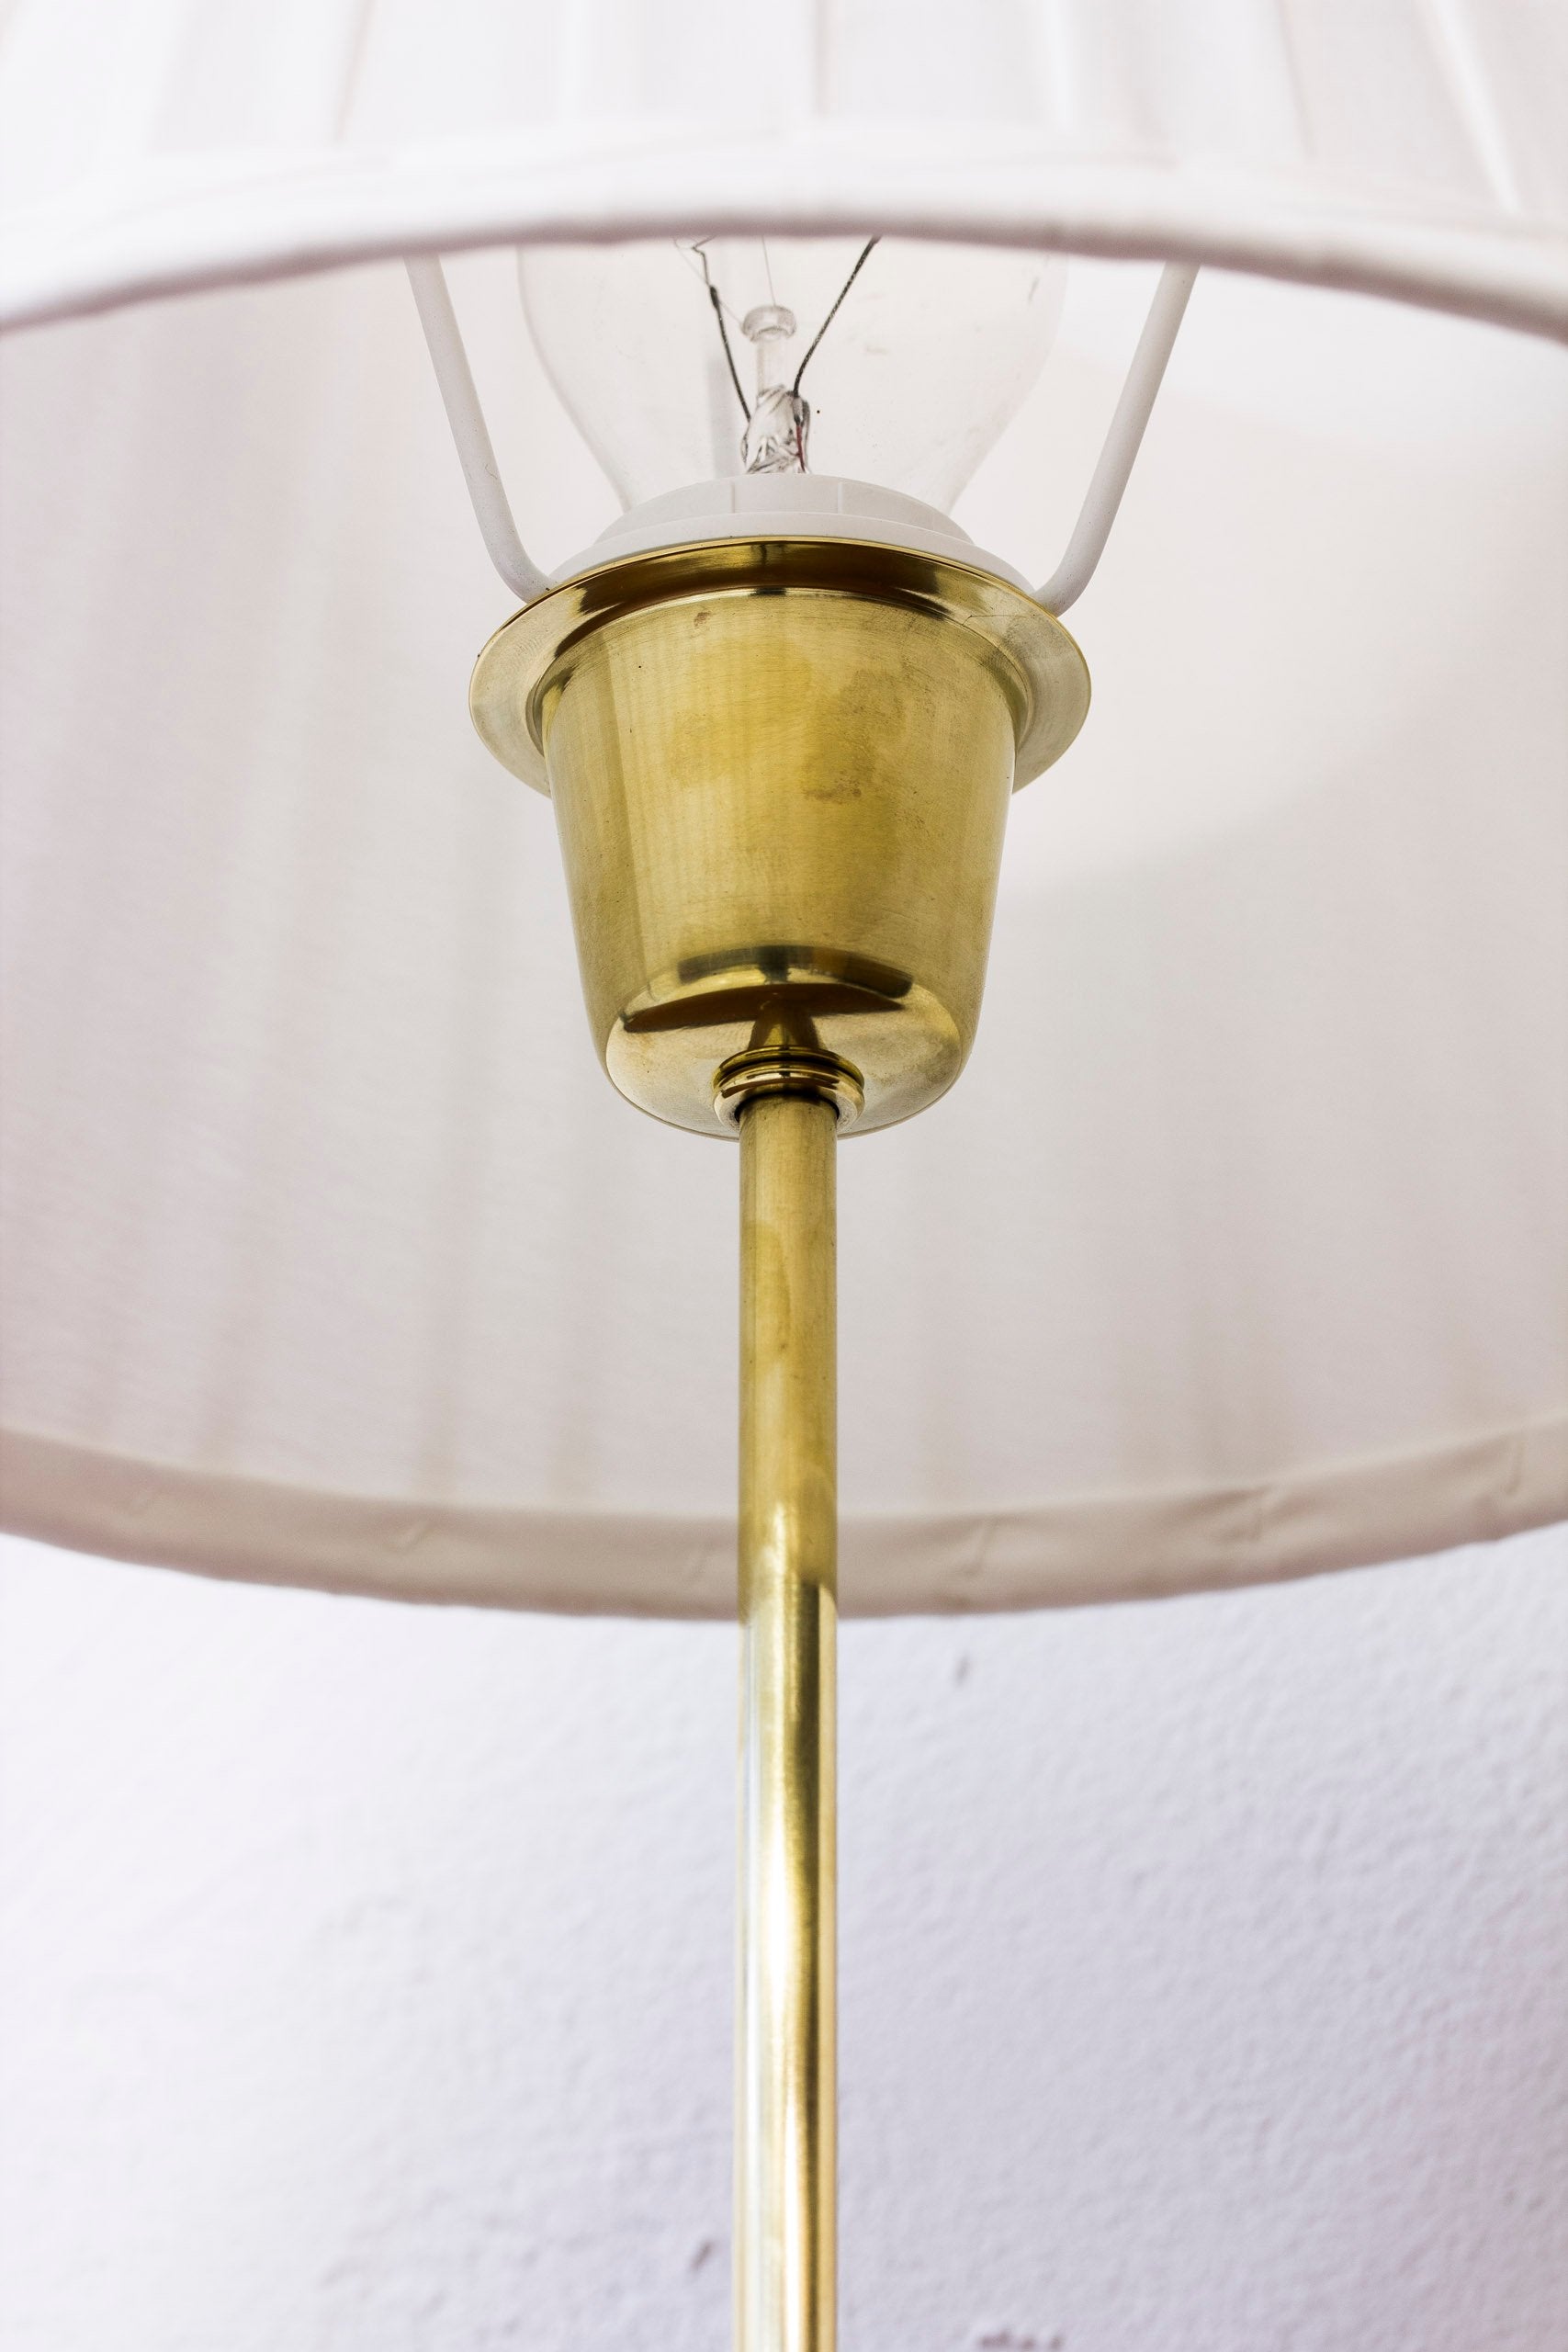 1940s table lamp by Bertil Brisborg